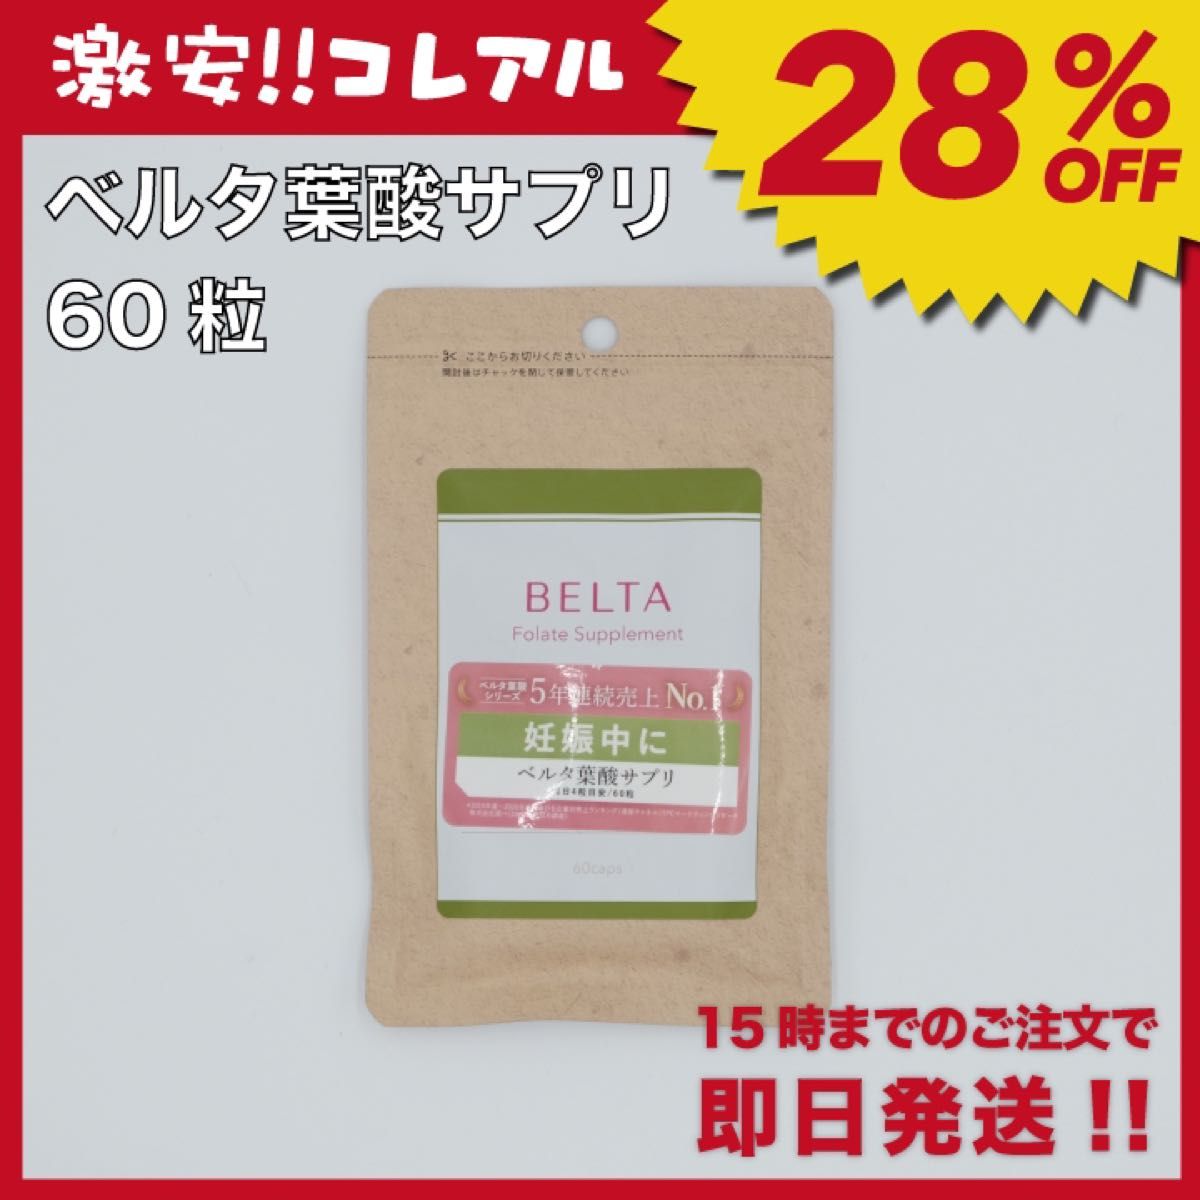 【新品】BELTA ベルタ葉酸 サプリ 1袋 妊活